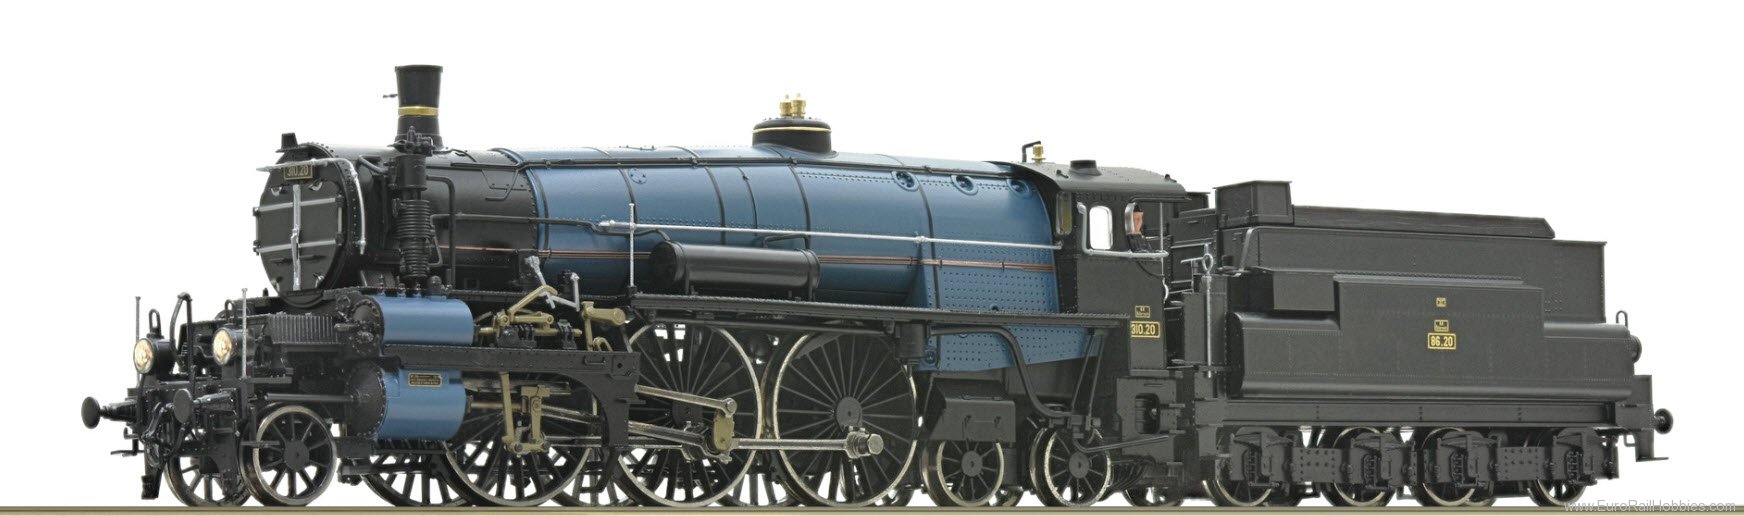 Roco 7110012 BBÃ Steam locomotive 310.20, (DCC w/Sound)